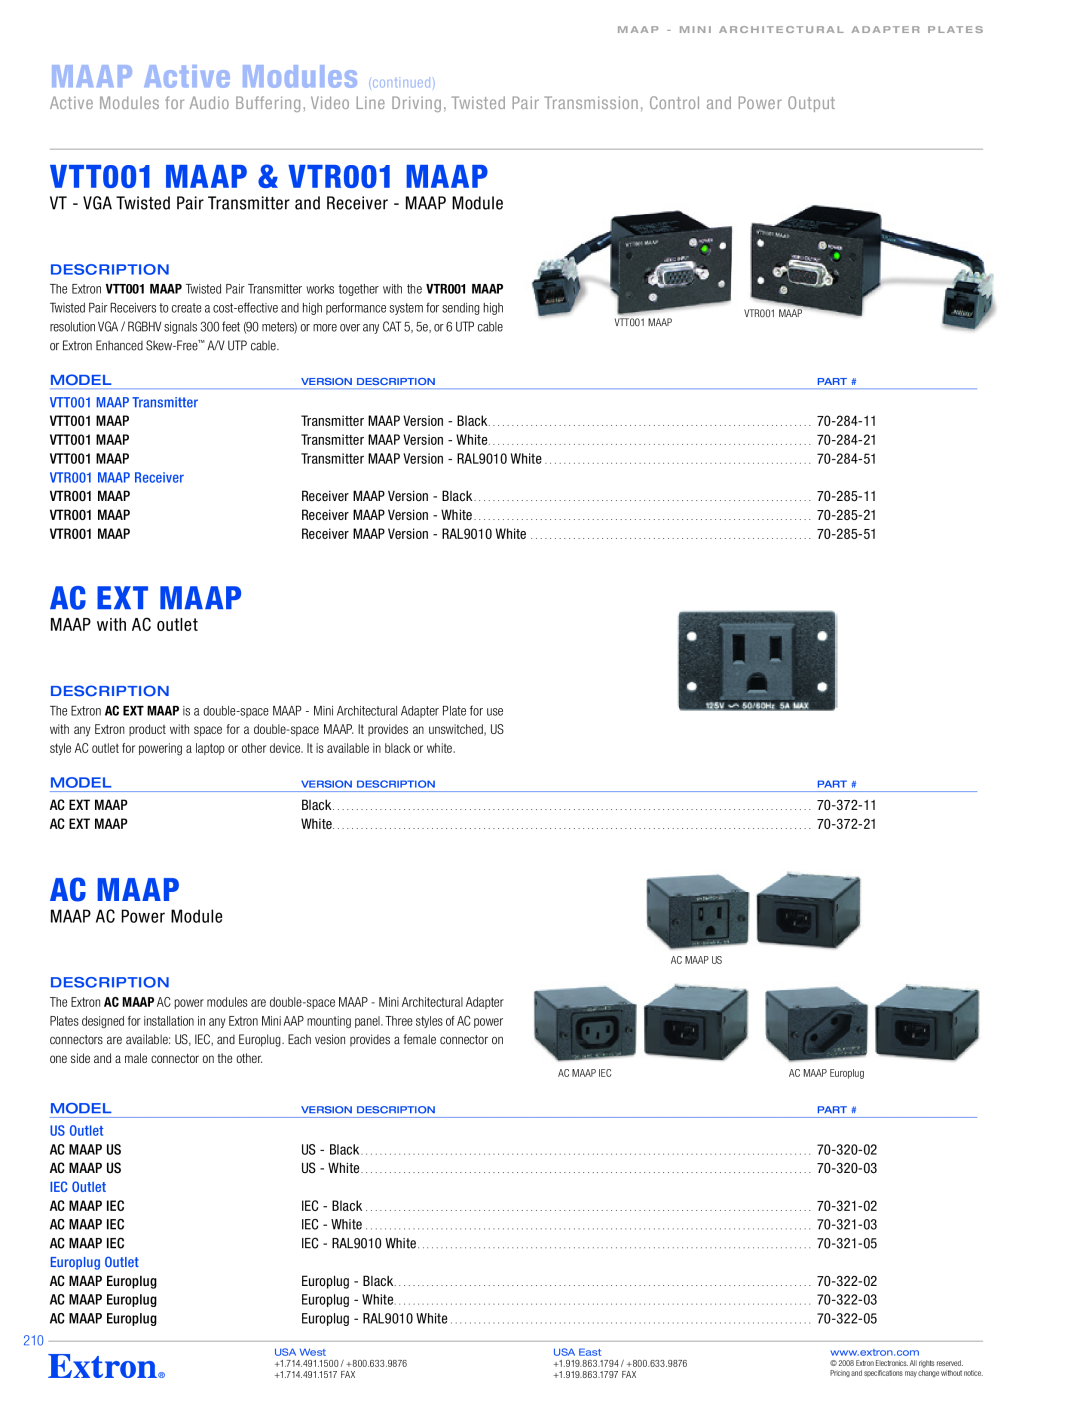 Extron electronic VCM 100 MAAP VTT001 MAAP & VTR001 MAAP, Ac Ext Maap, Ac Maap, MAAP with AC outlet, MAAP AC Power Module 